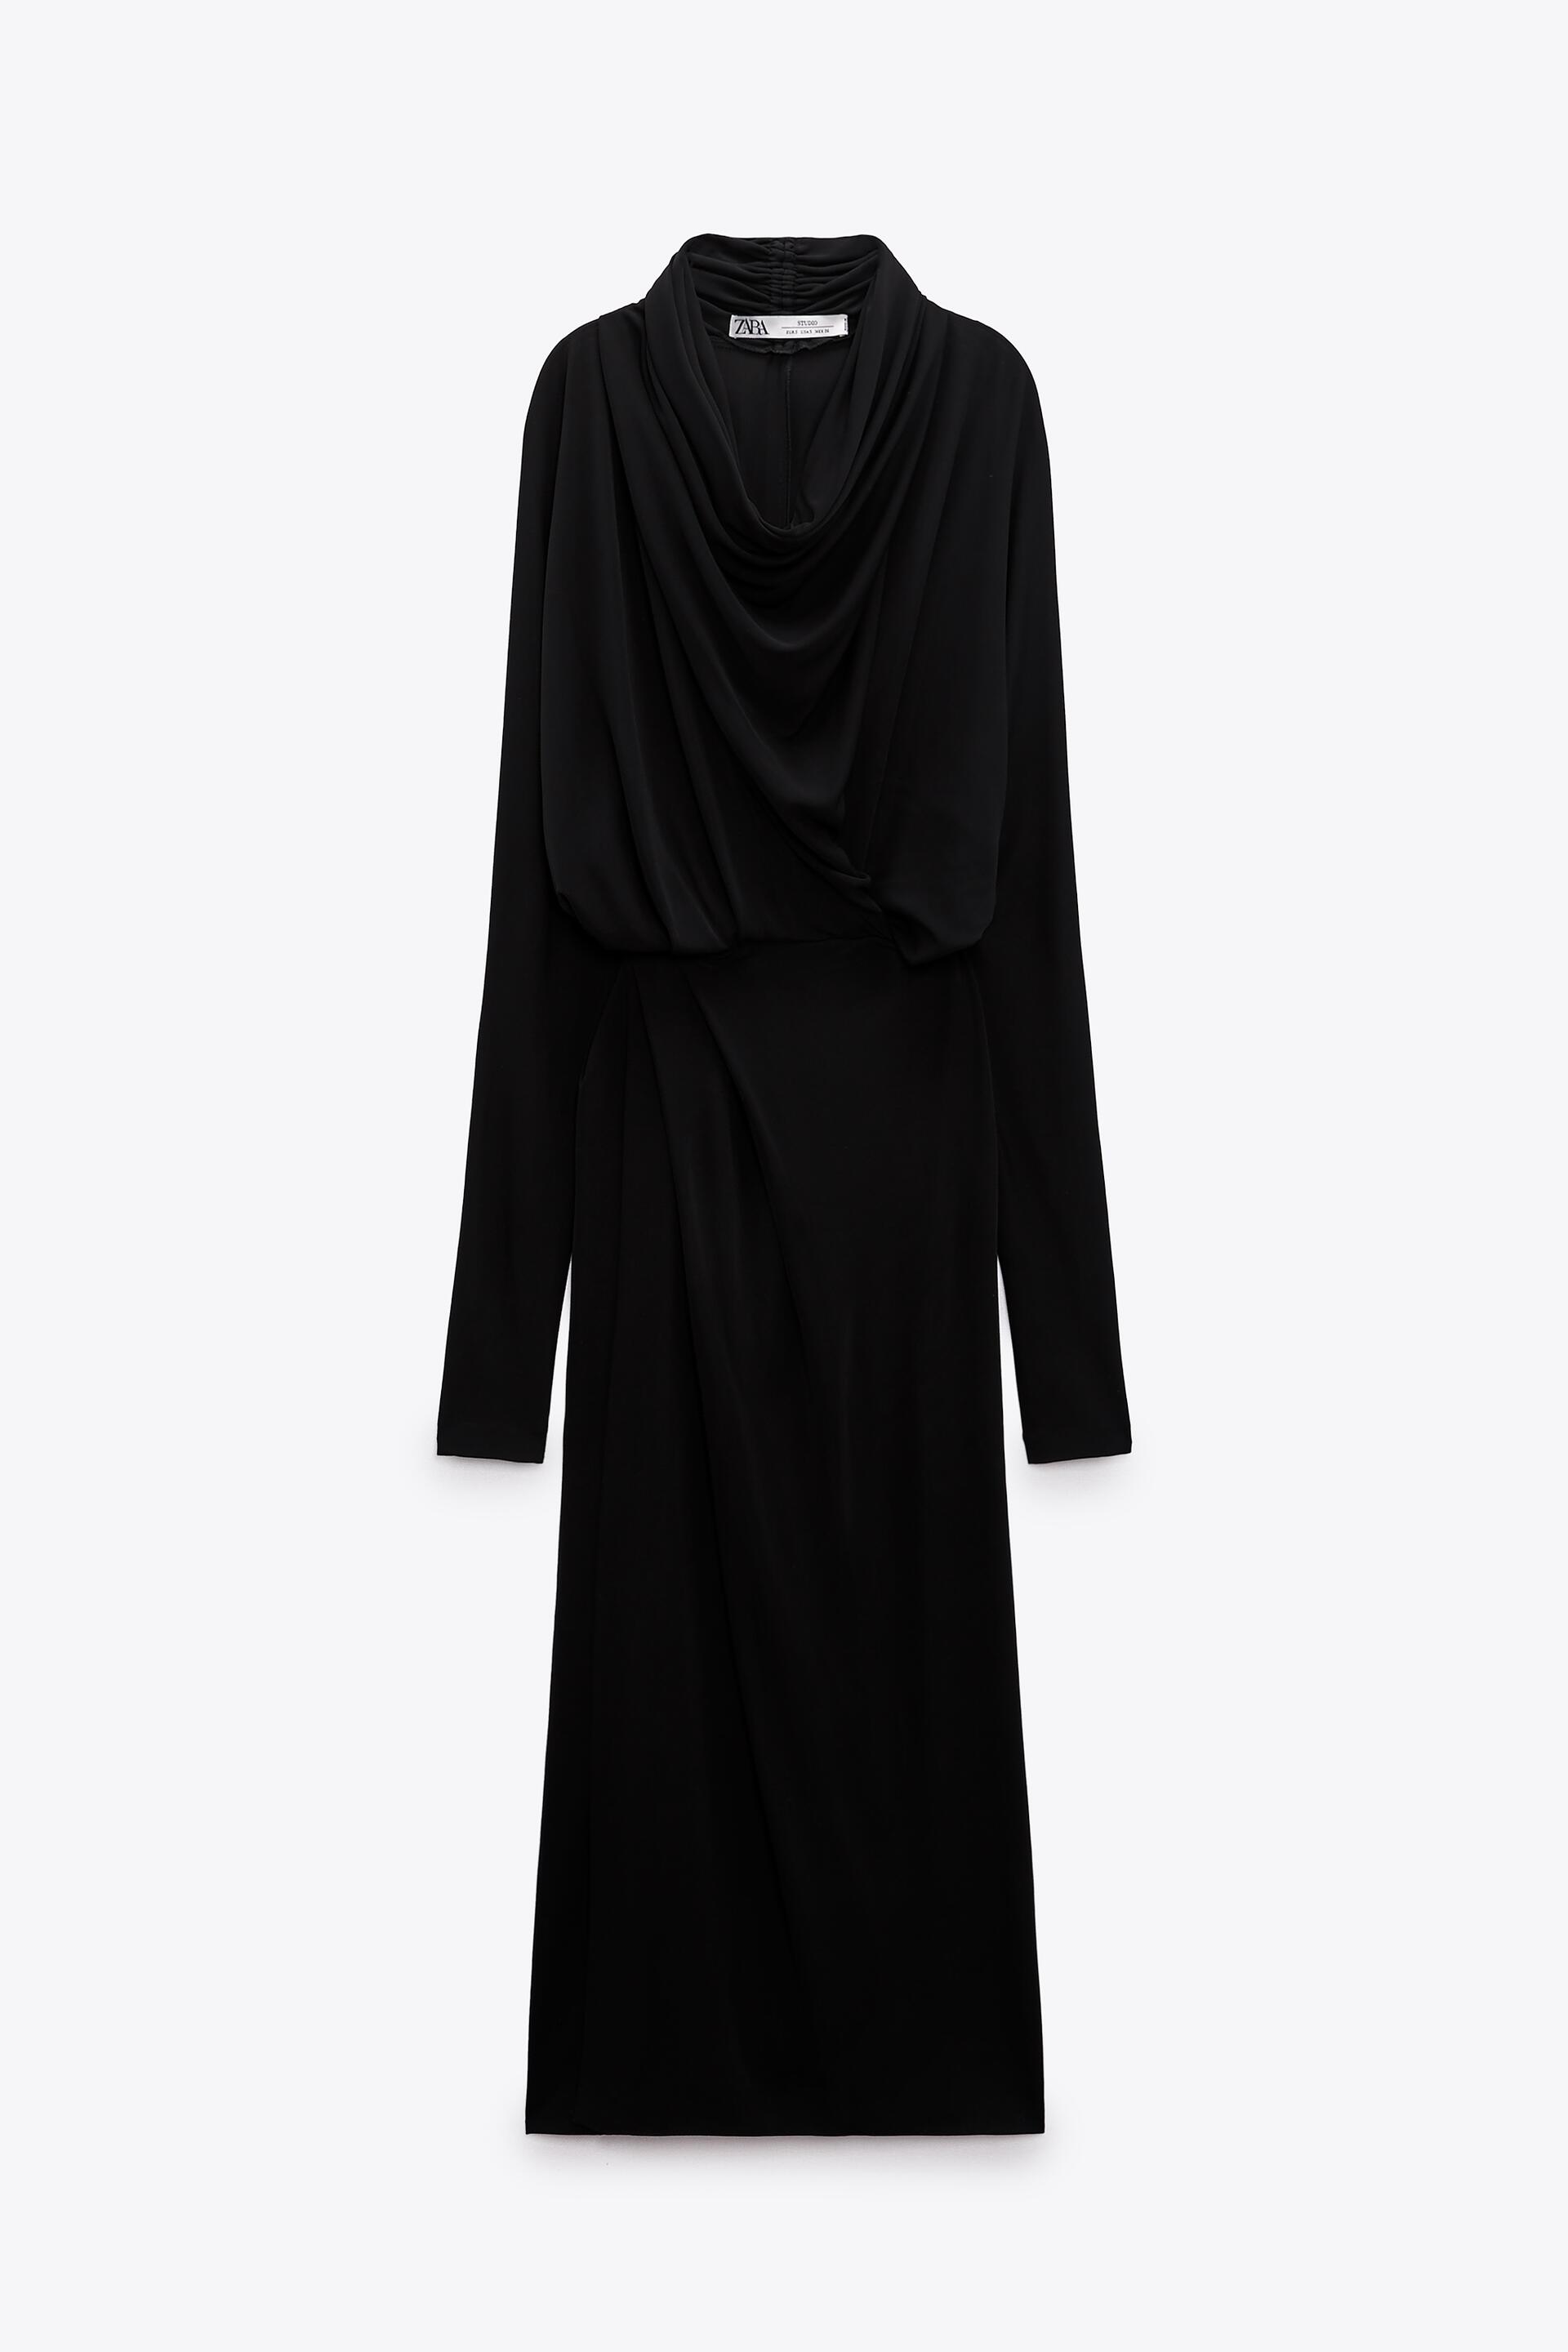 Платье женское ZARA 02089001 черное L (доставка из-за рубежа)